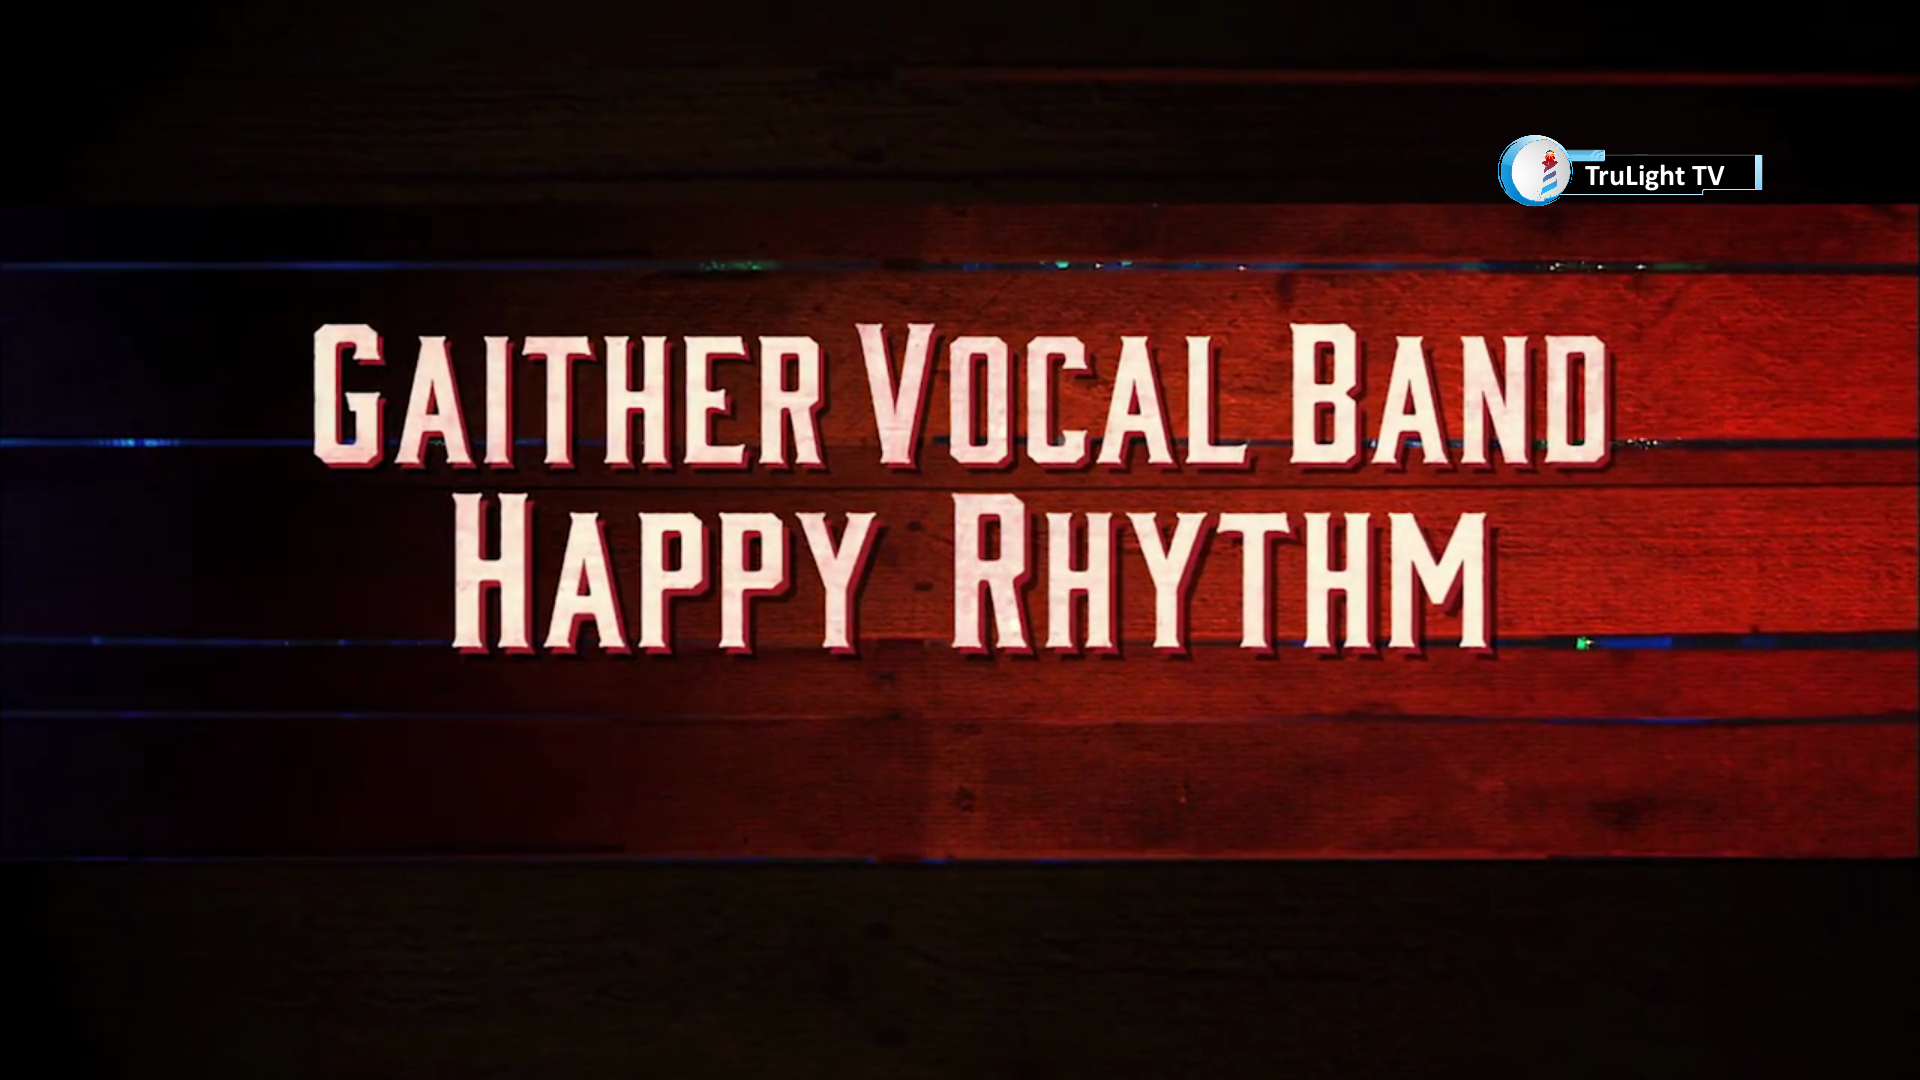 Happy Rhythm